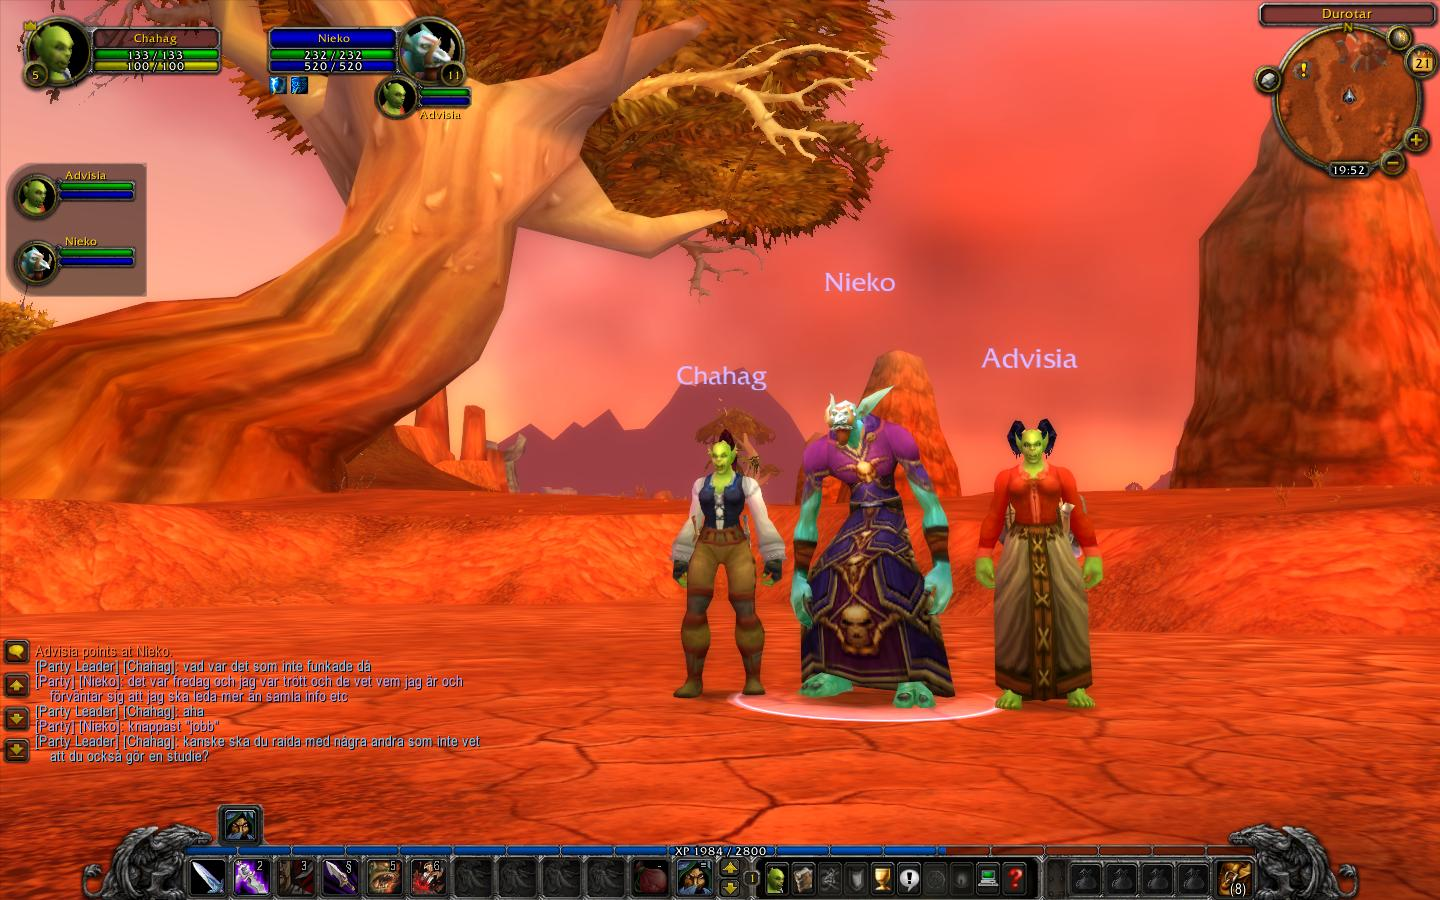 Handledning i Azeroth. Skärmbild från World of Warcraft, Blizzard Entertainment.